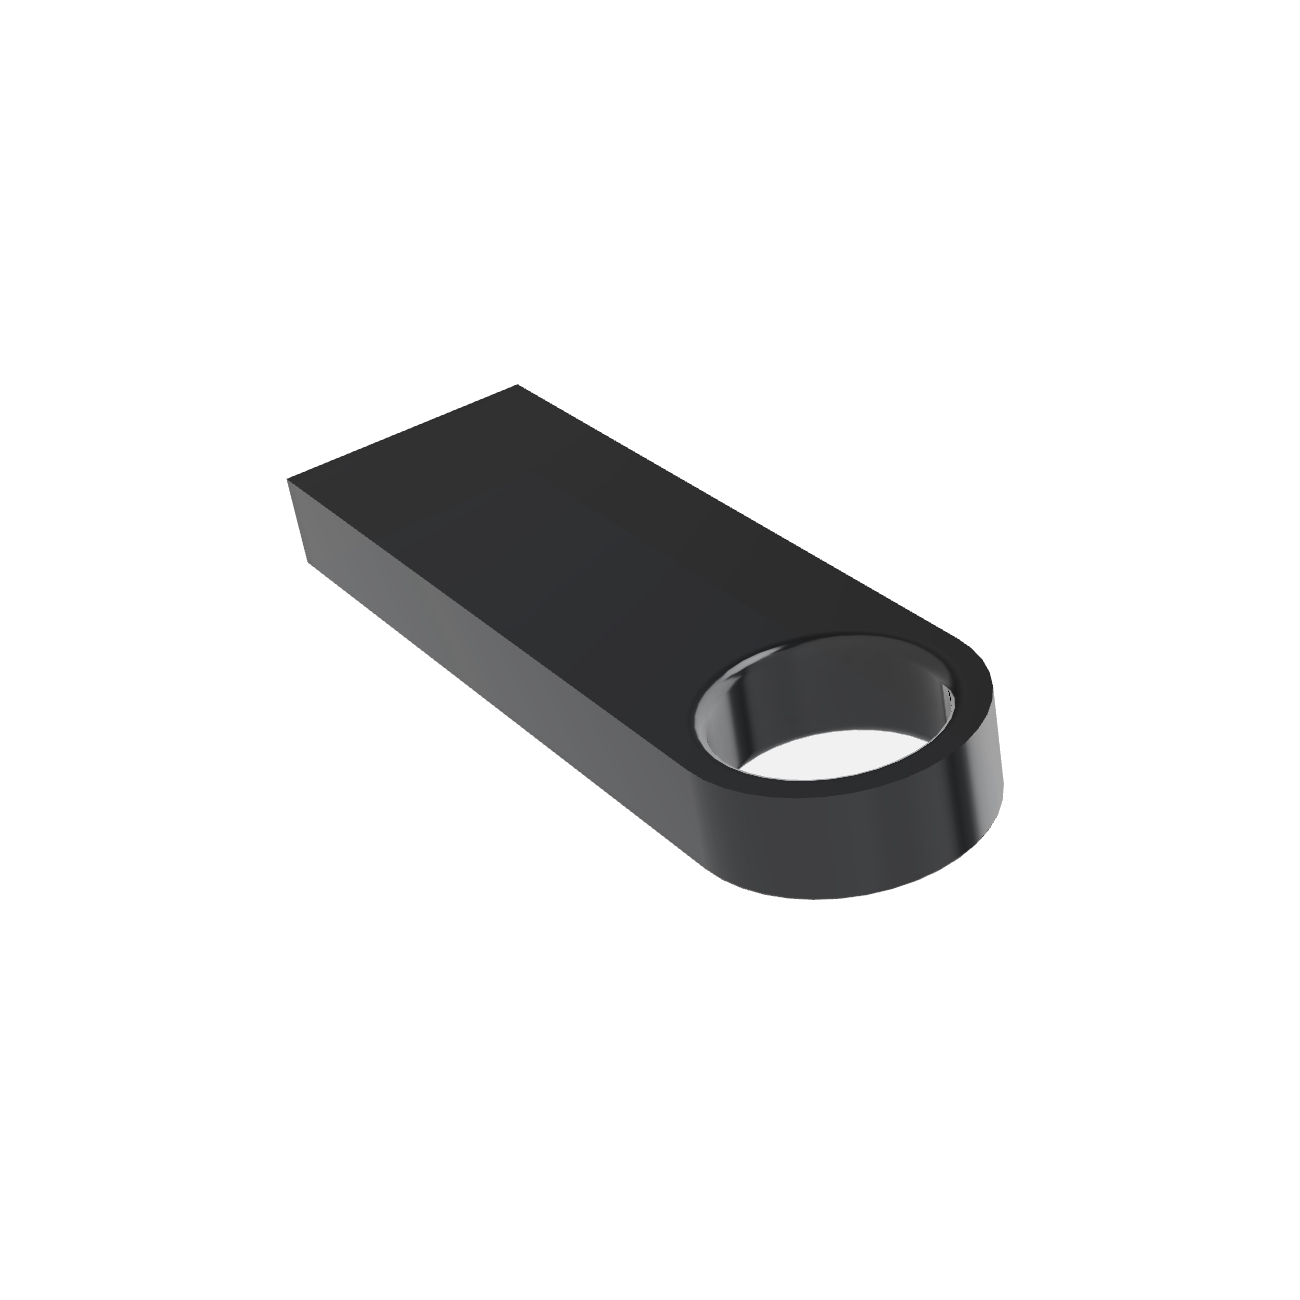 USB GERMANY ® SE09 64 (Schwarz, USB-Stick GB)